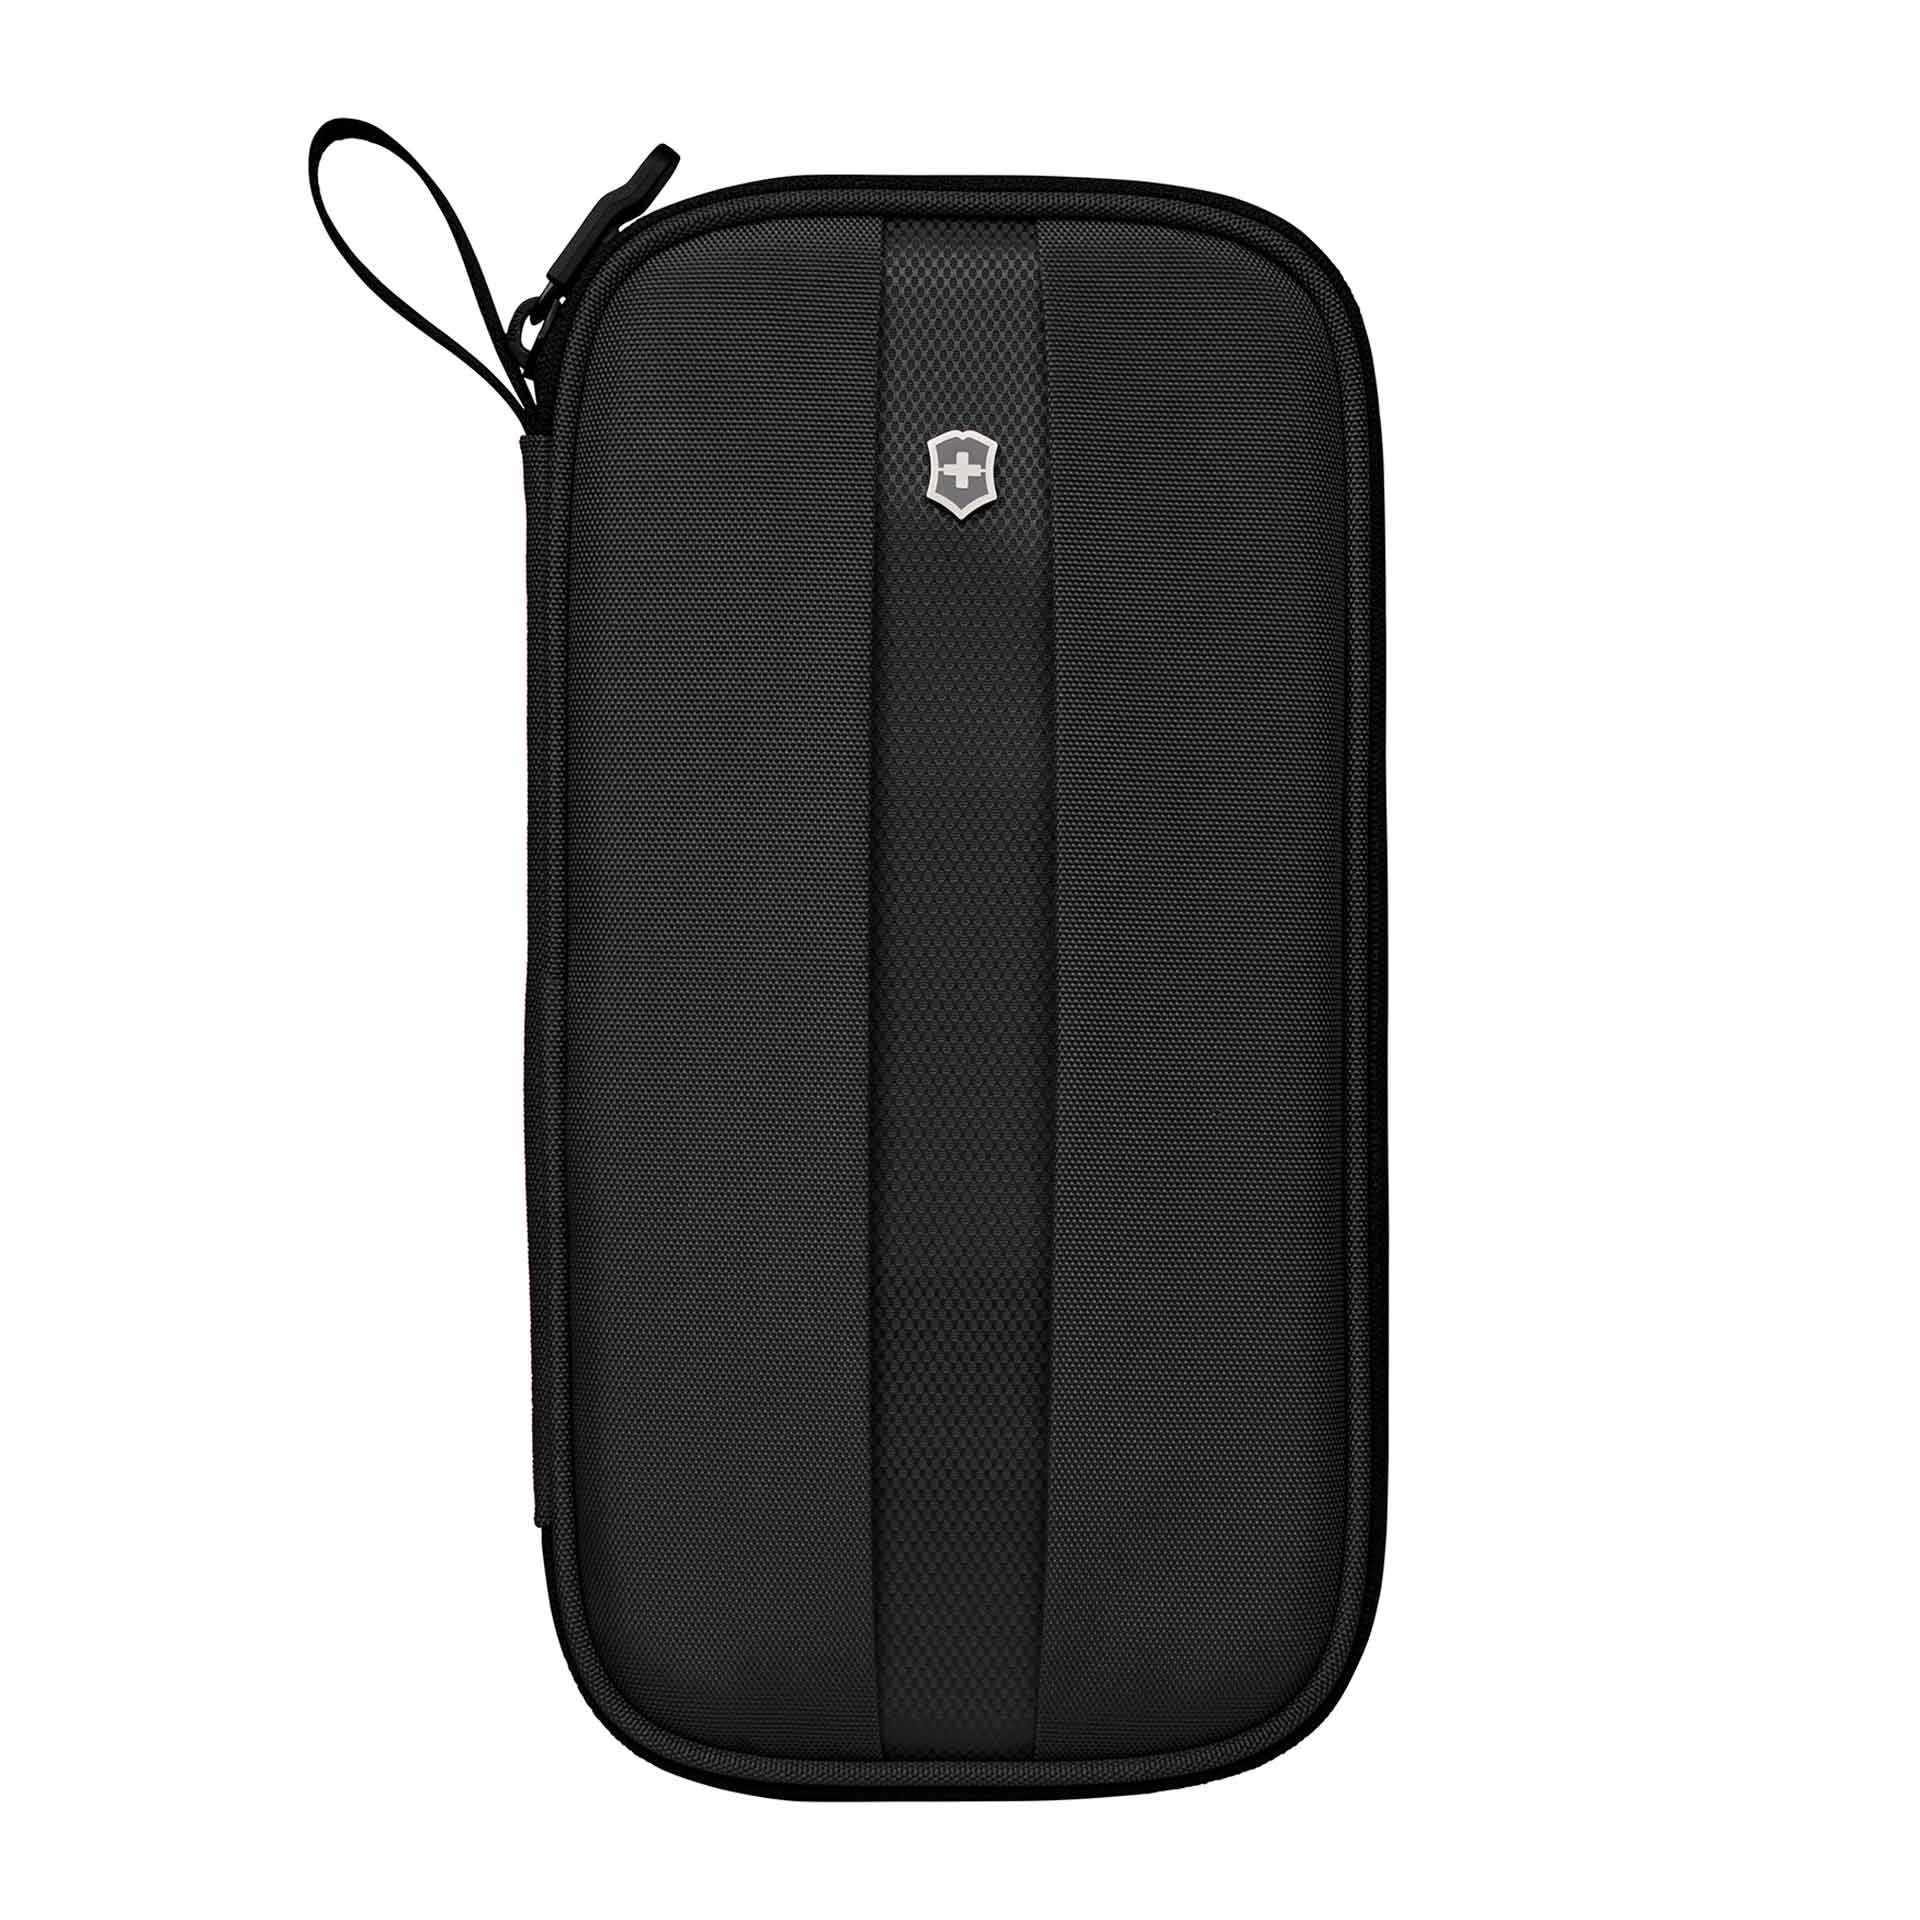 VICTORINOX Travel Accessories 5.0 Reise Organizer mit RFID-Schutz black